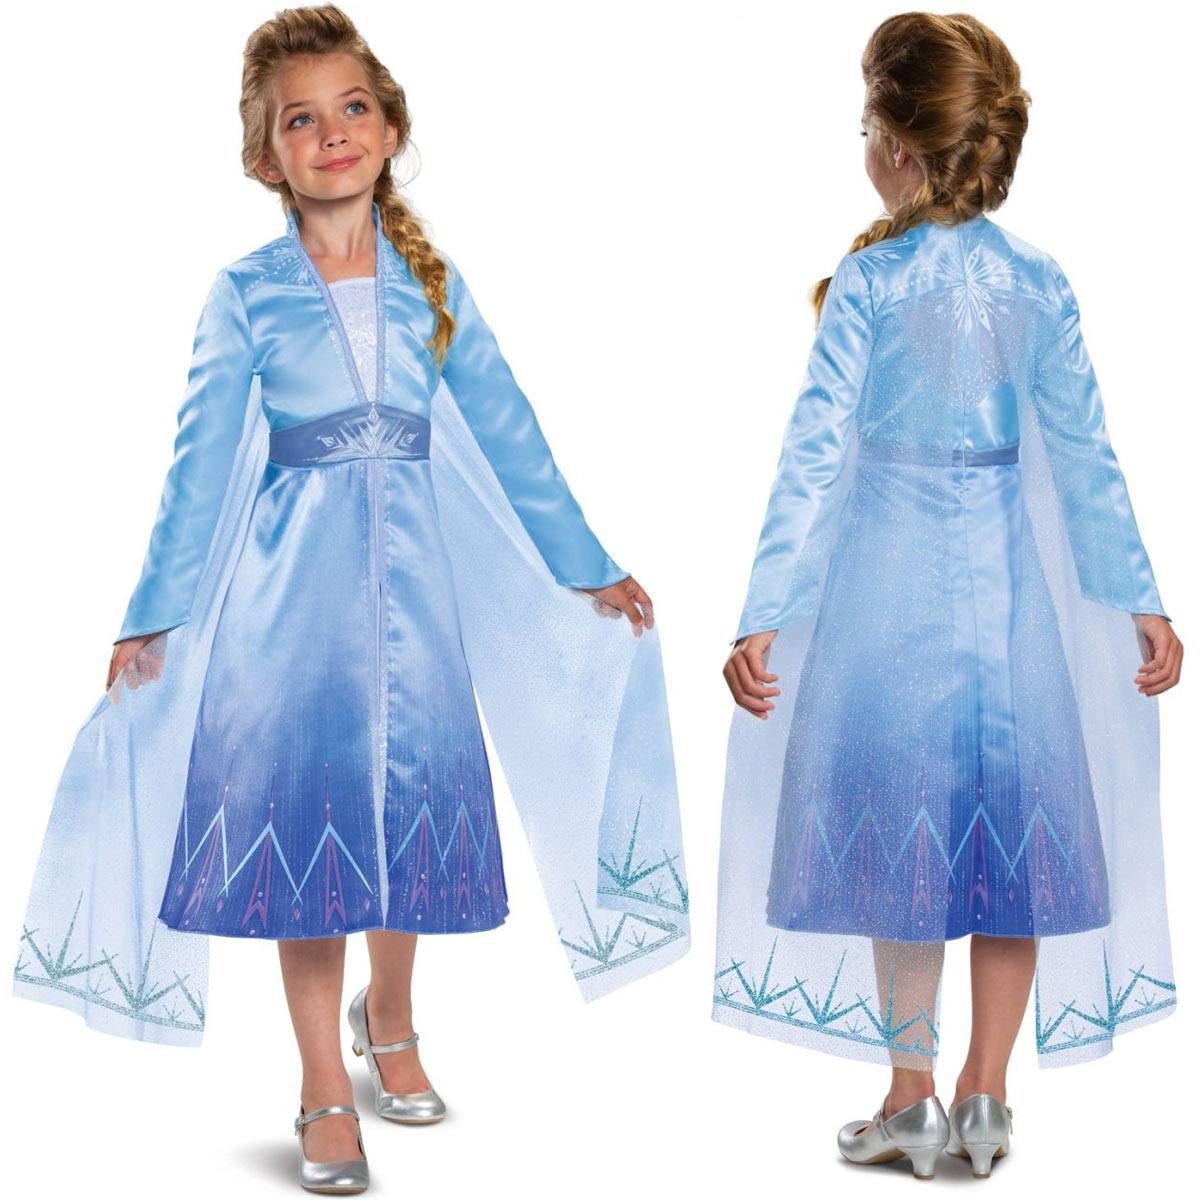 送料無料 アナと雪の女王 2 ドレス 子供 エルサ なりきり ワンピース アナ雪 マント キッズ コスプレ 衣装 仮装 コスチューム Frozen 2